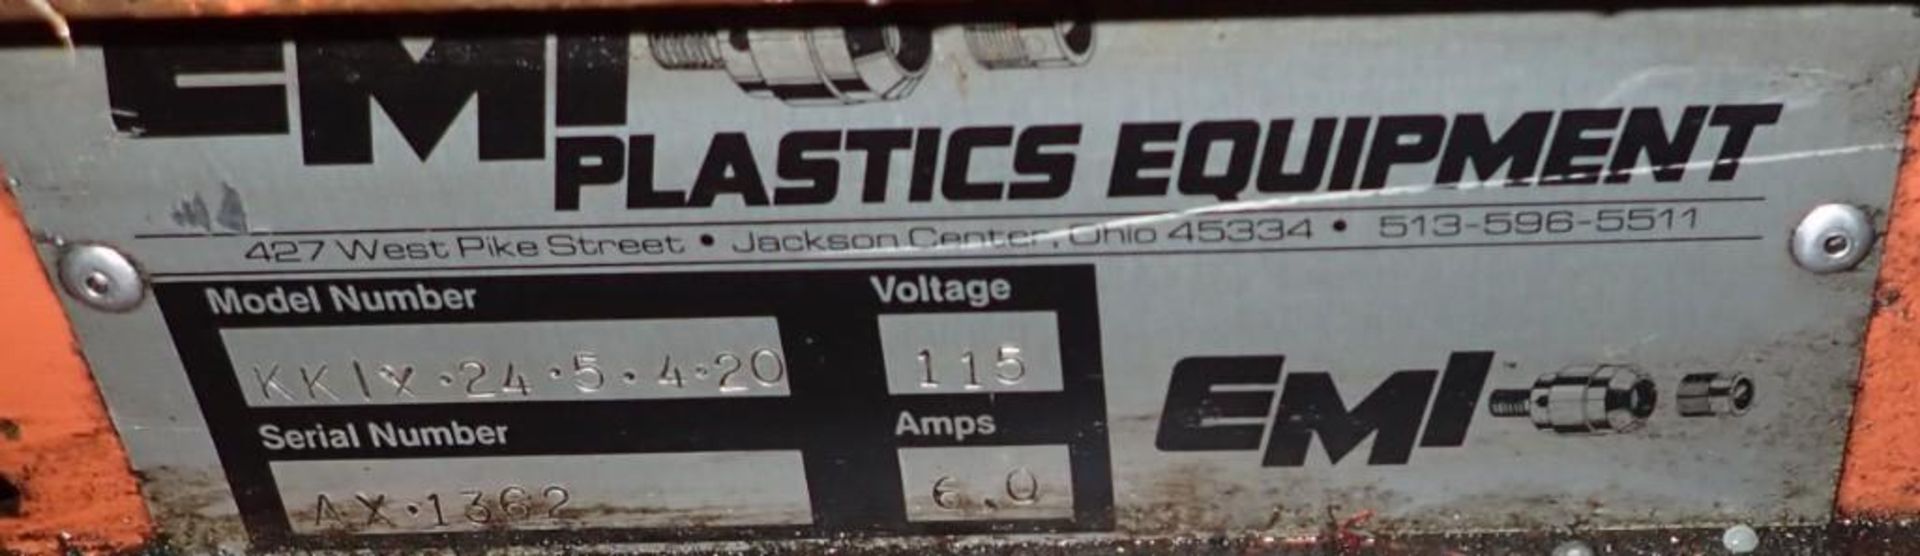 EMI Plastics Equipment #KKIX-24-5-4-20 Incline Belt Conveyor - Image 6 of 6